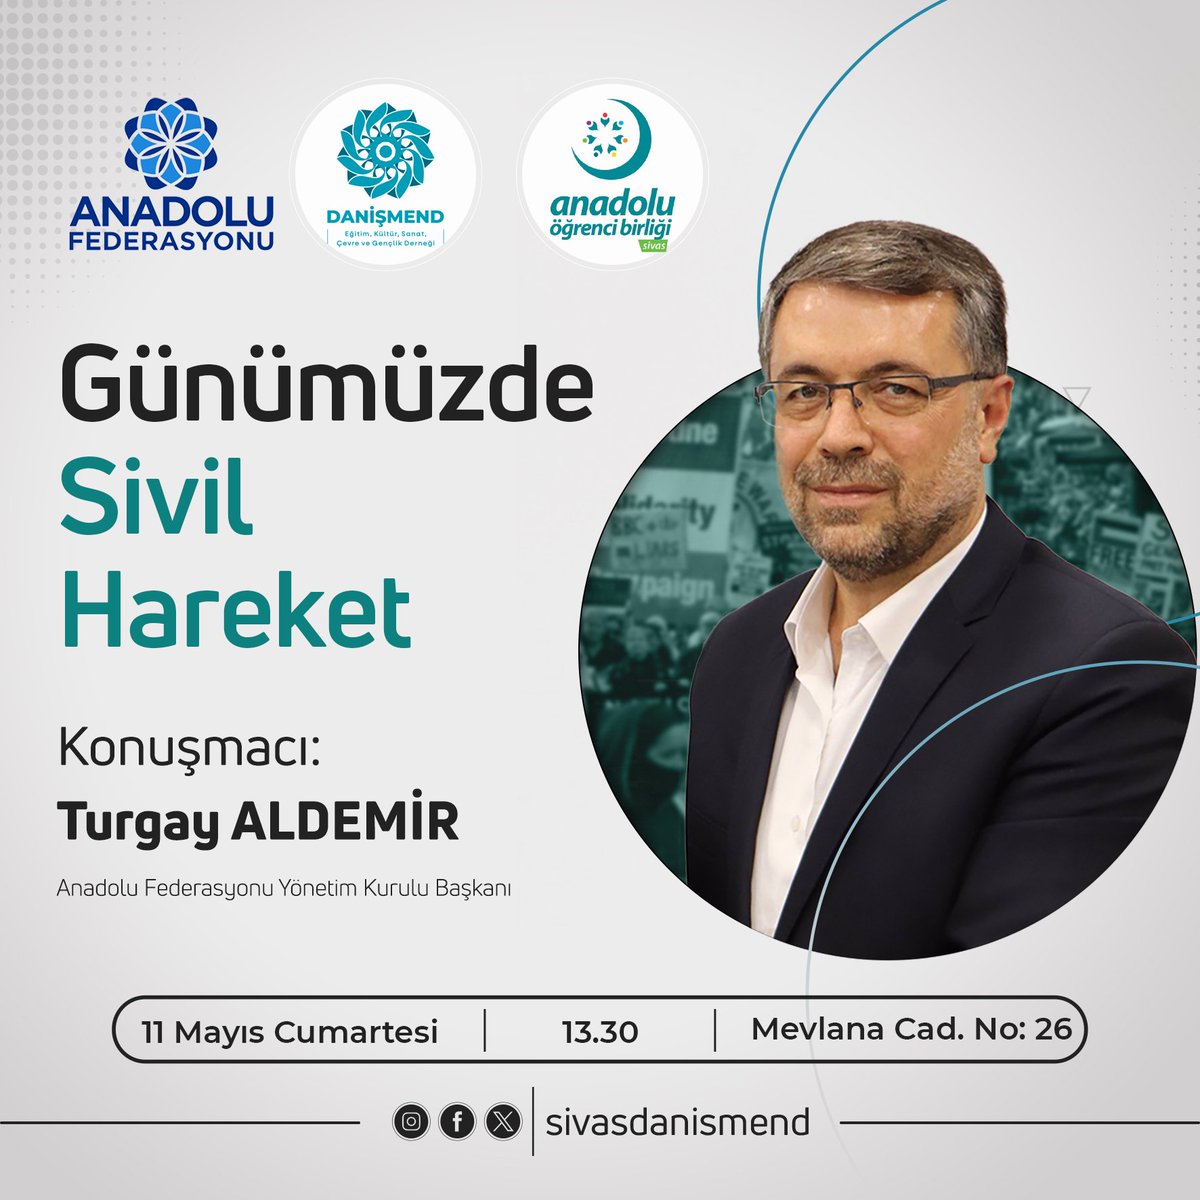 Bu hafta Anadolu Federasyonu Yönetim Kurulu Başkanı Turgay ALDEMİR Bey 'Günümüzde Sivil Hareket' başlıklı hasbihaliyle bizlerle olacak. Cumartesi, 13.30'da, dernek merkezimize sizleri de bekliyoruz. #danişmendderneği #sivas #turgayaldemir